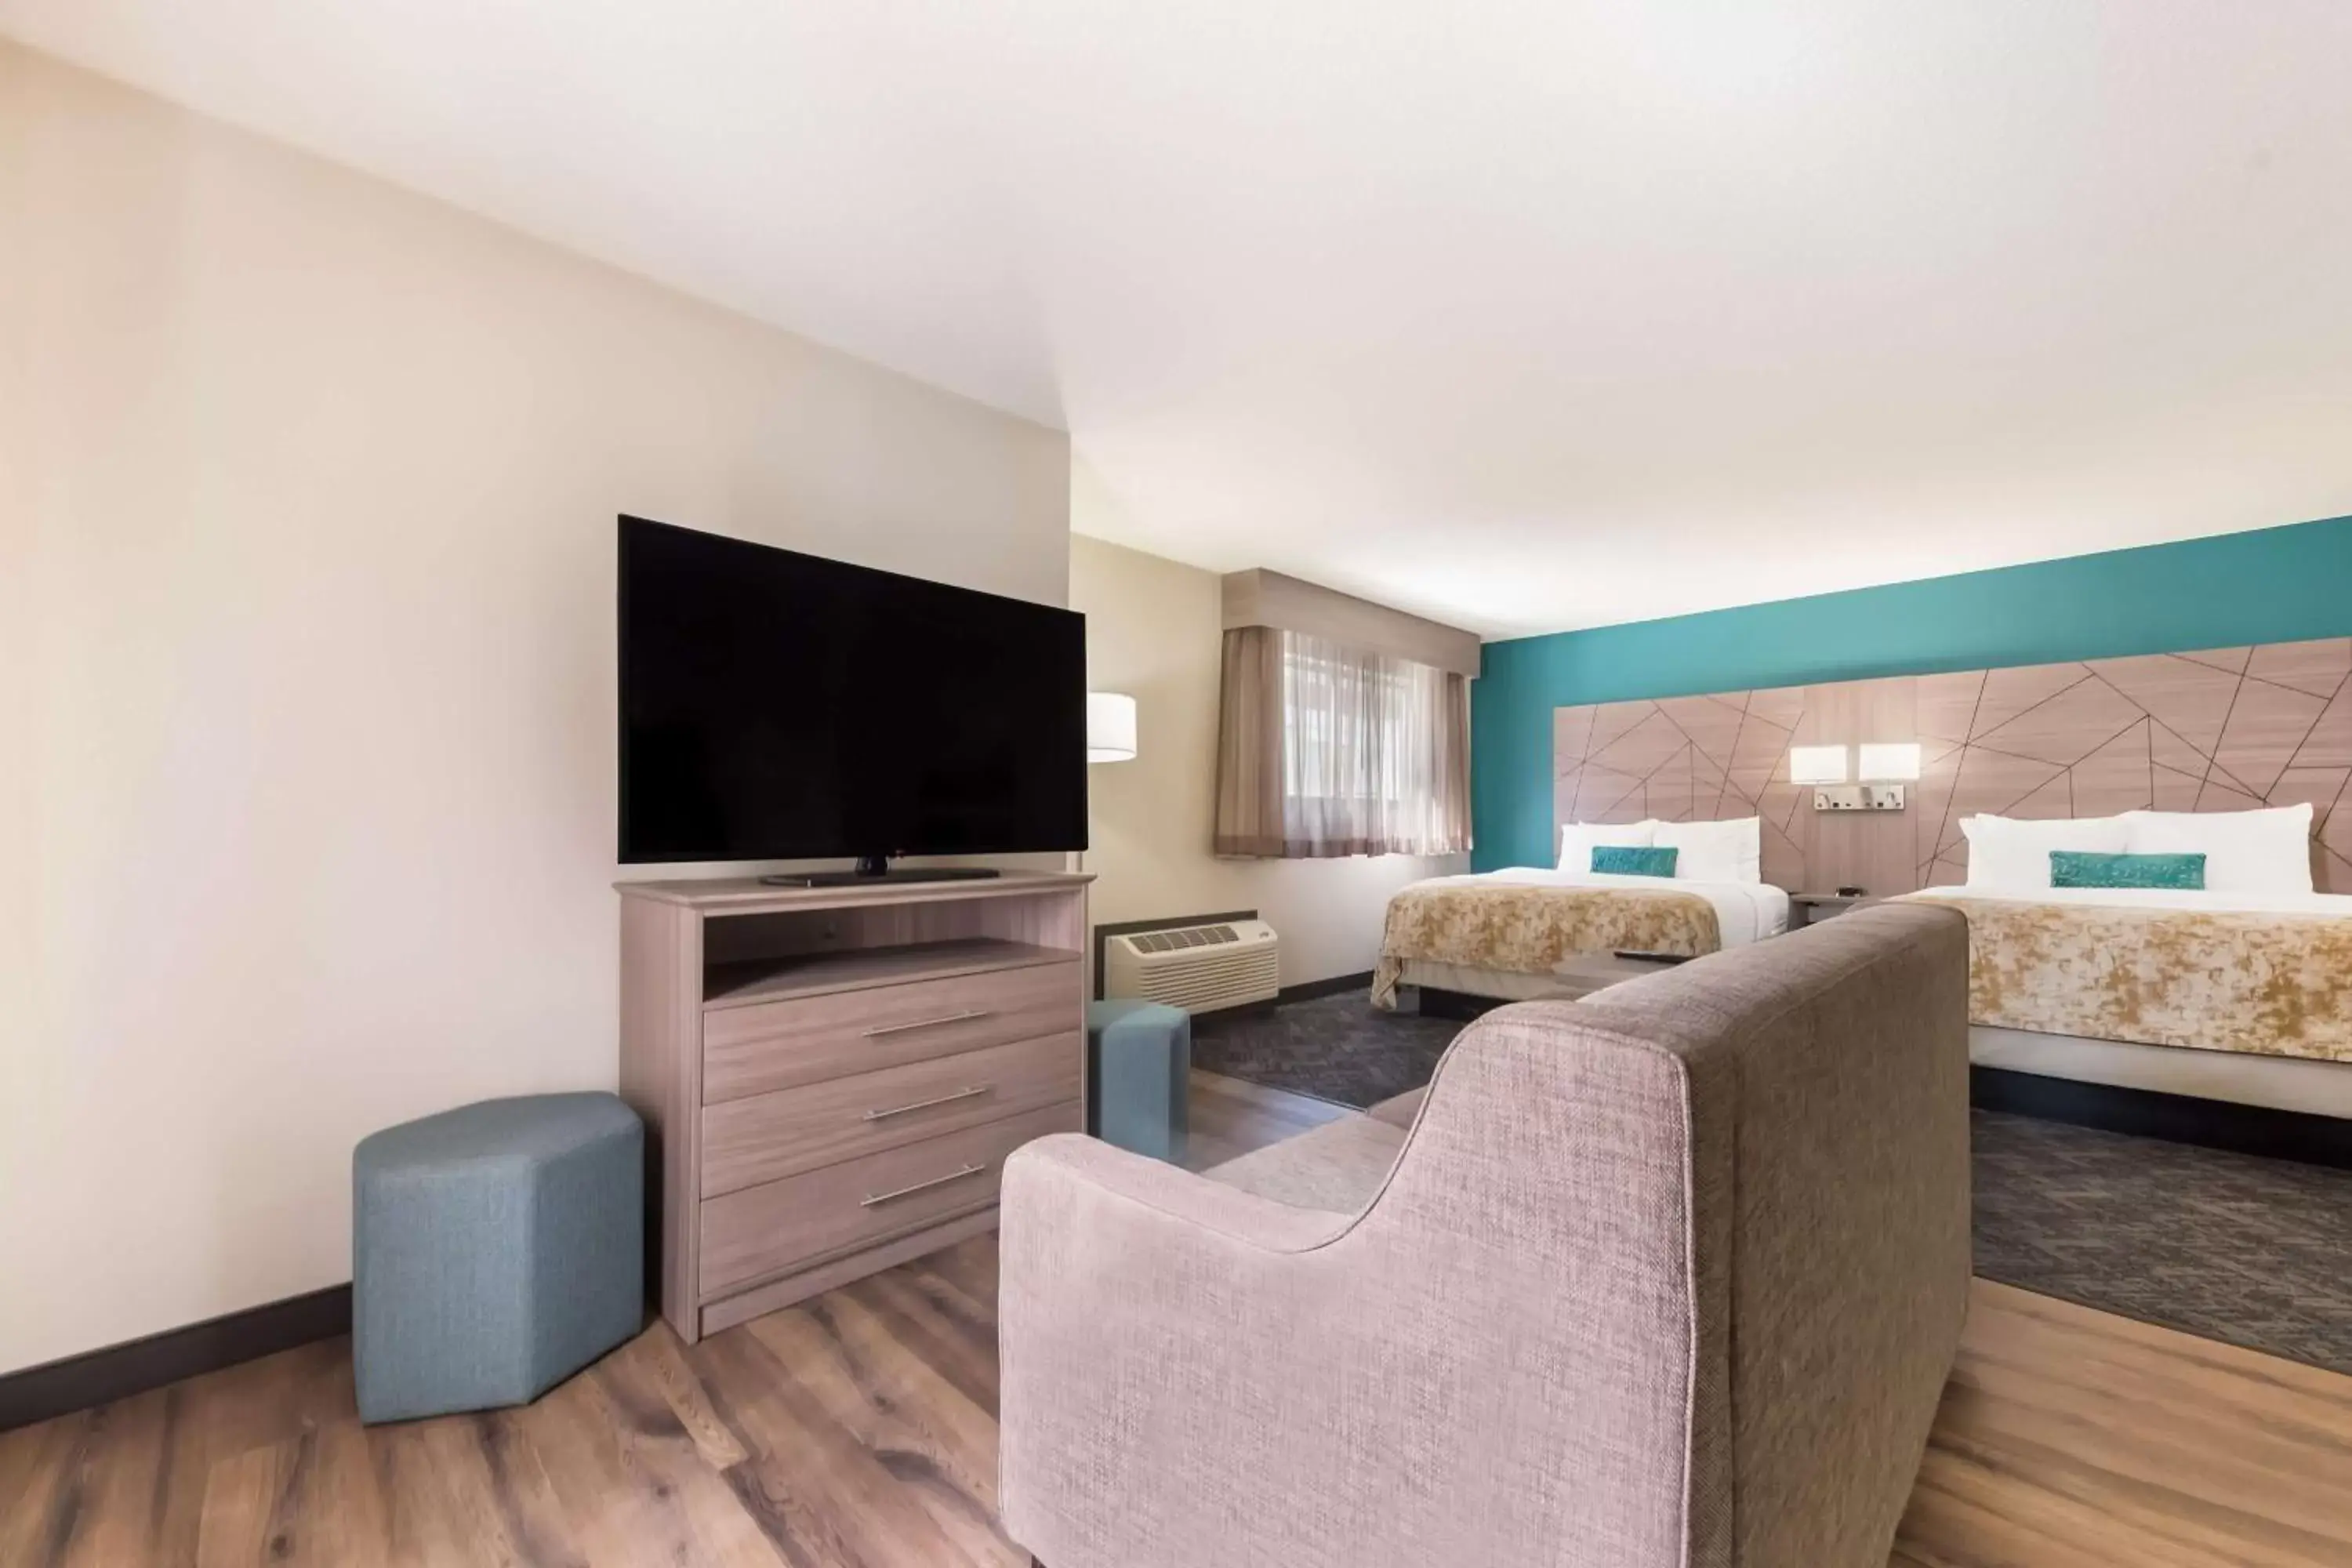 Bedroom, TV/Entertainment Center in Best Western Fishkill Inn & Suites